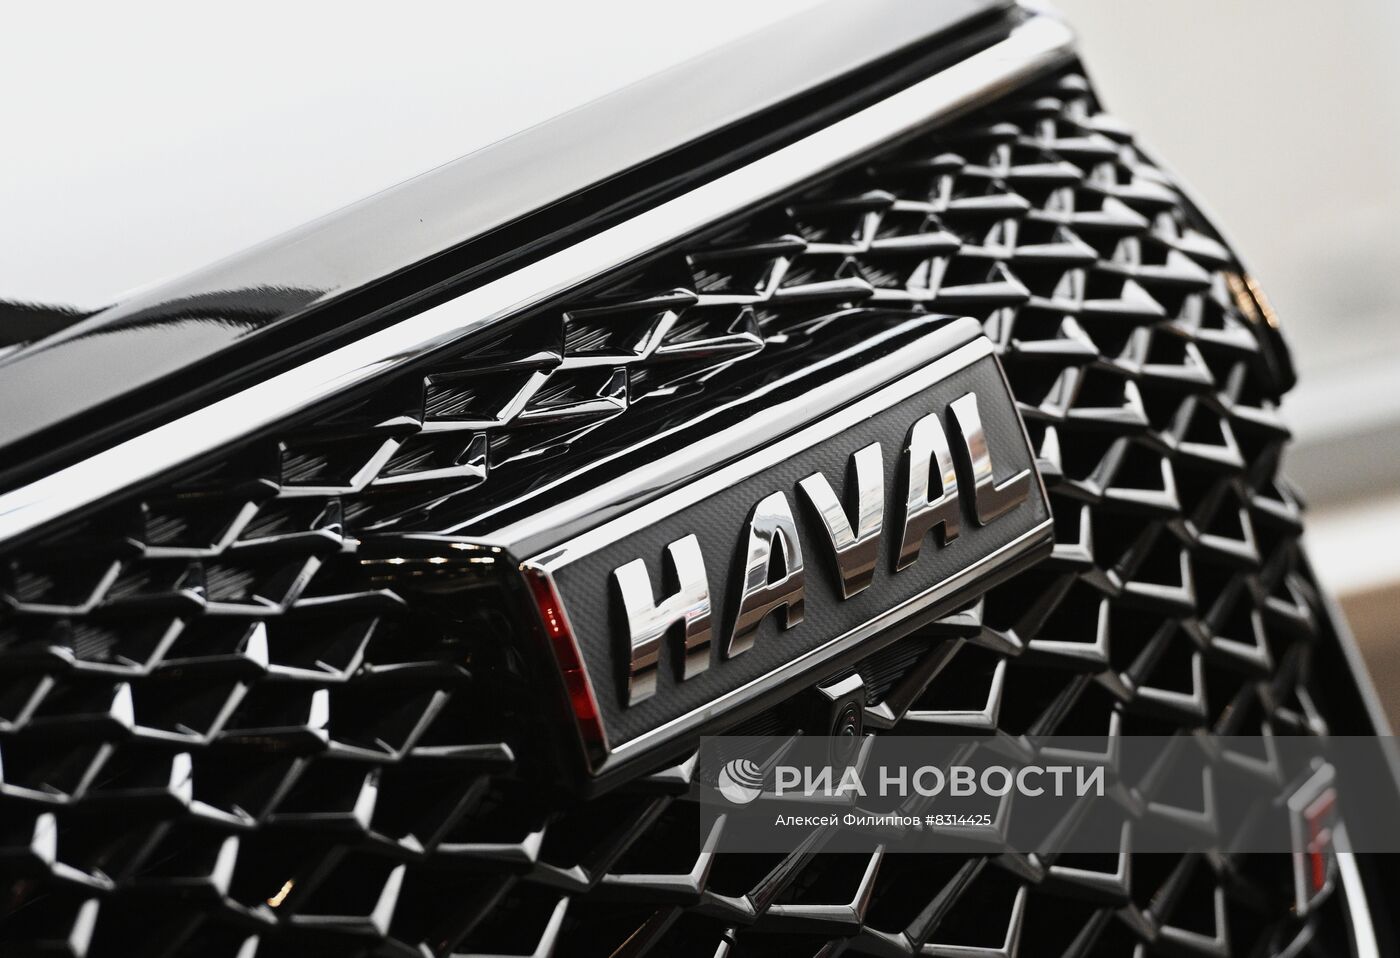 Работа официального дилерского центра HAVAL "Фаворит Моторс" в Москве